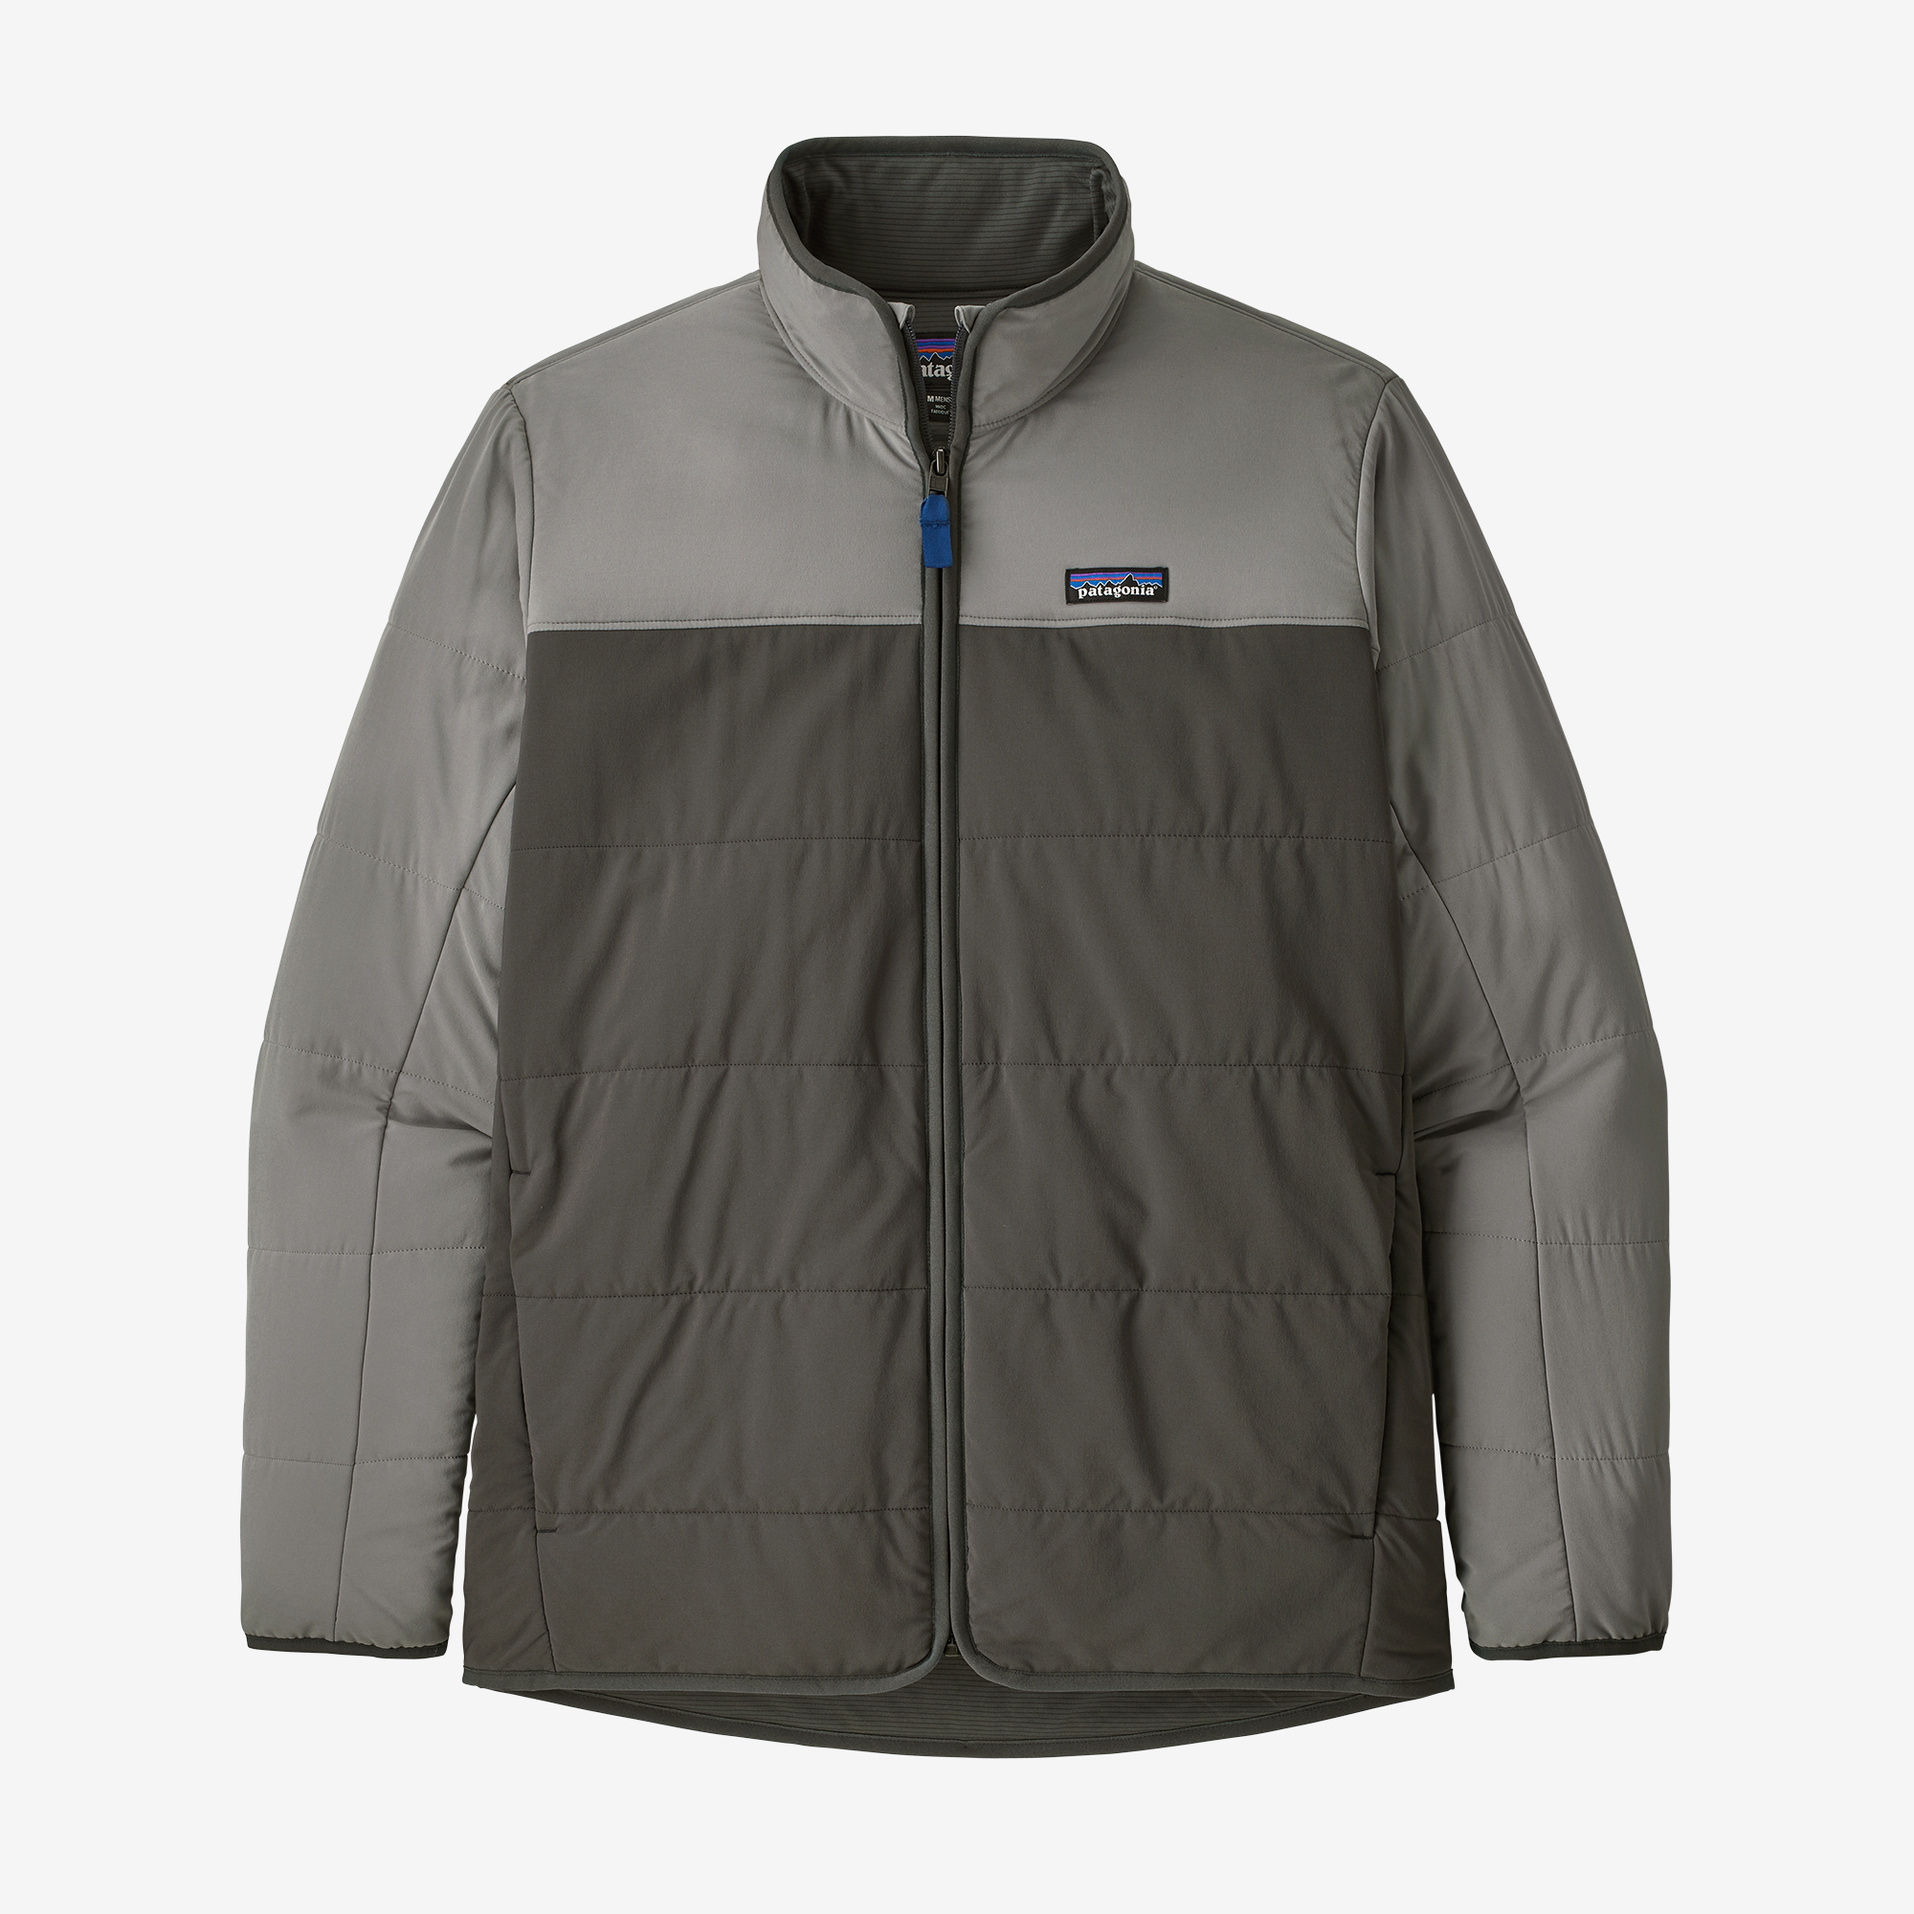 Patagonia M's Pack In Jacket - Forge Grey - Medium